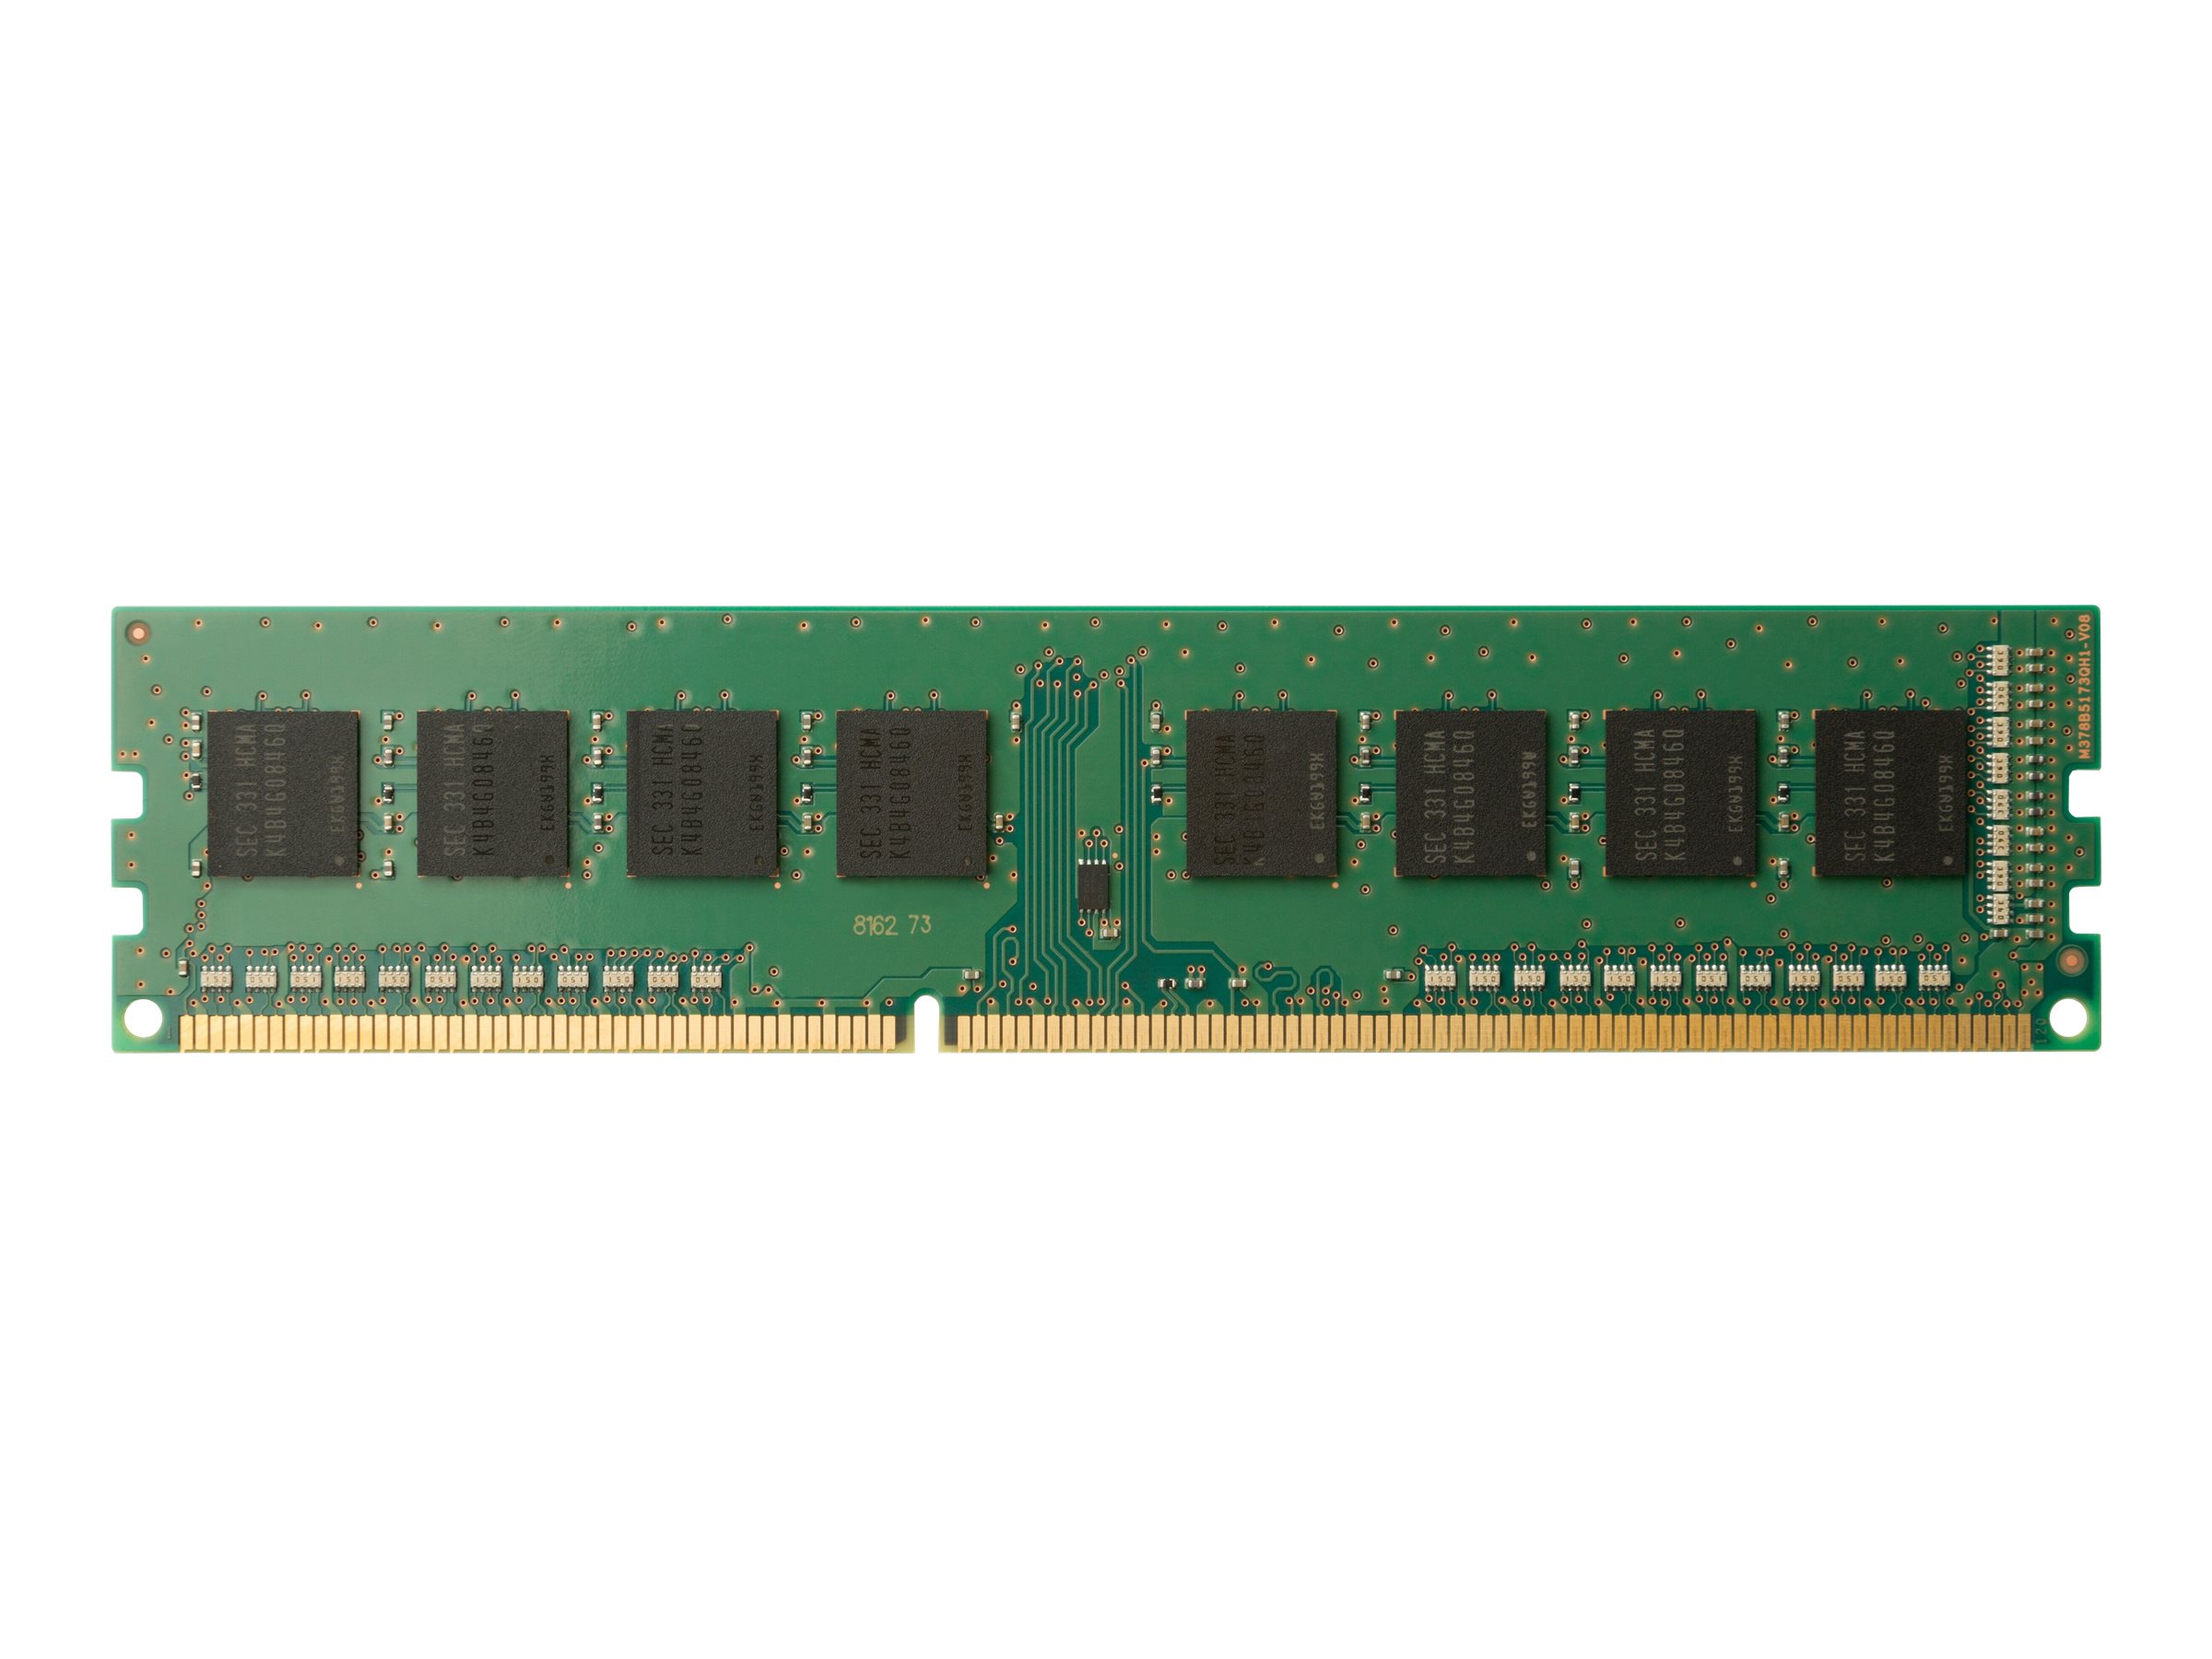 HP 1x32GB DDR4 2933 NECC UDIMM